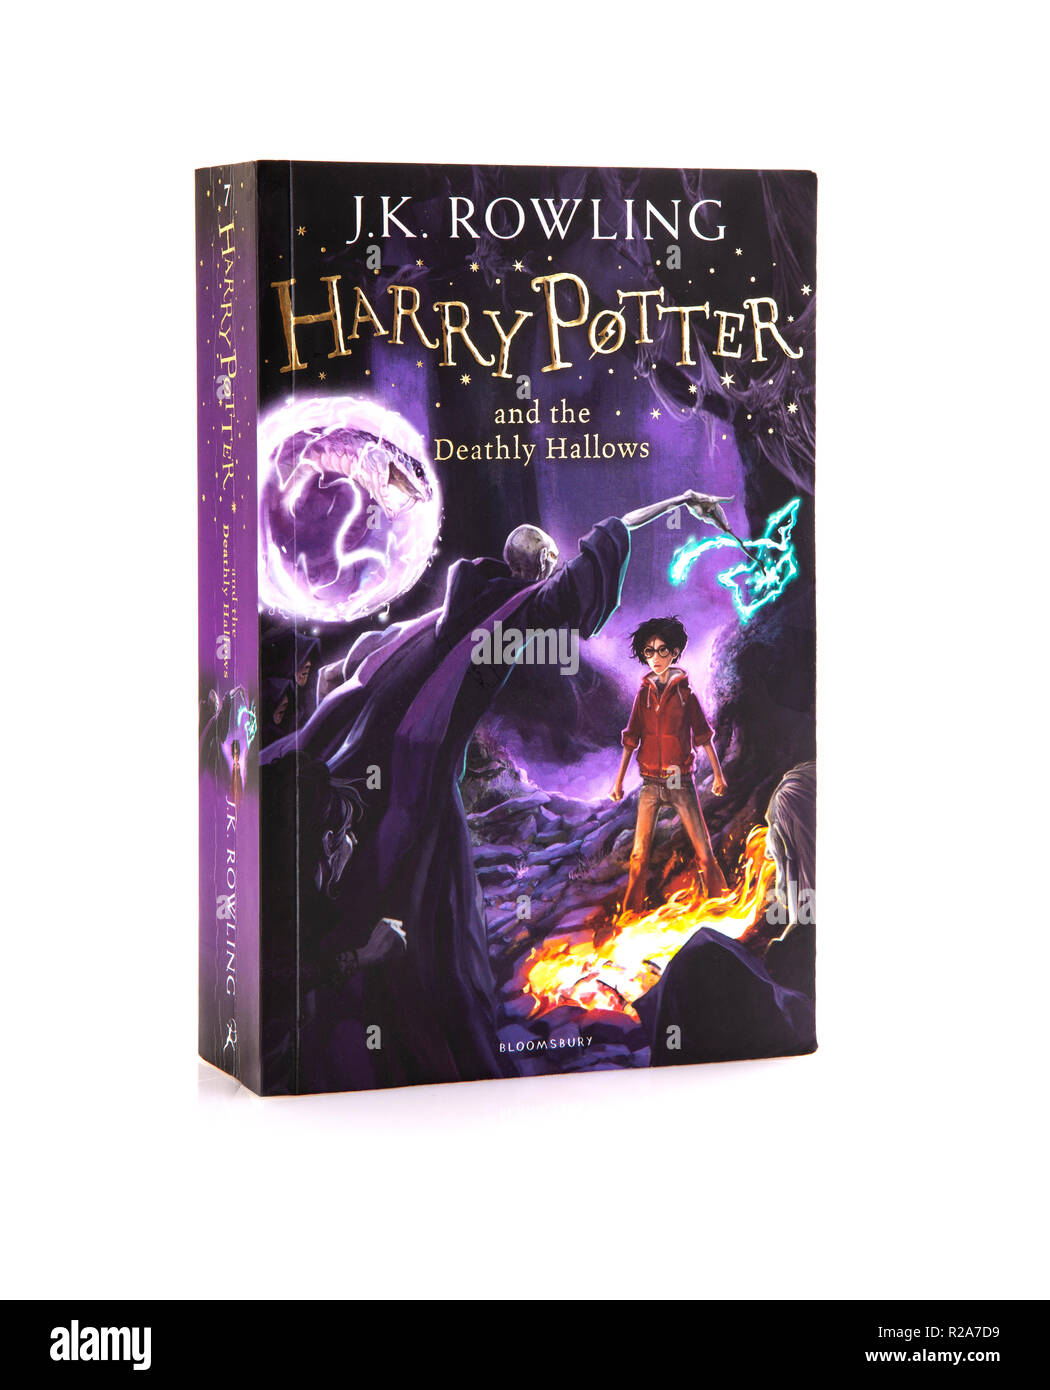 SWINDON, Regno Unito - 18 novembre 2018: Harry Potter ed il Deathly Hallows edizione tascabile su sfondo bianco Foto Stock